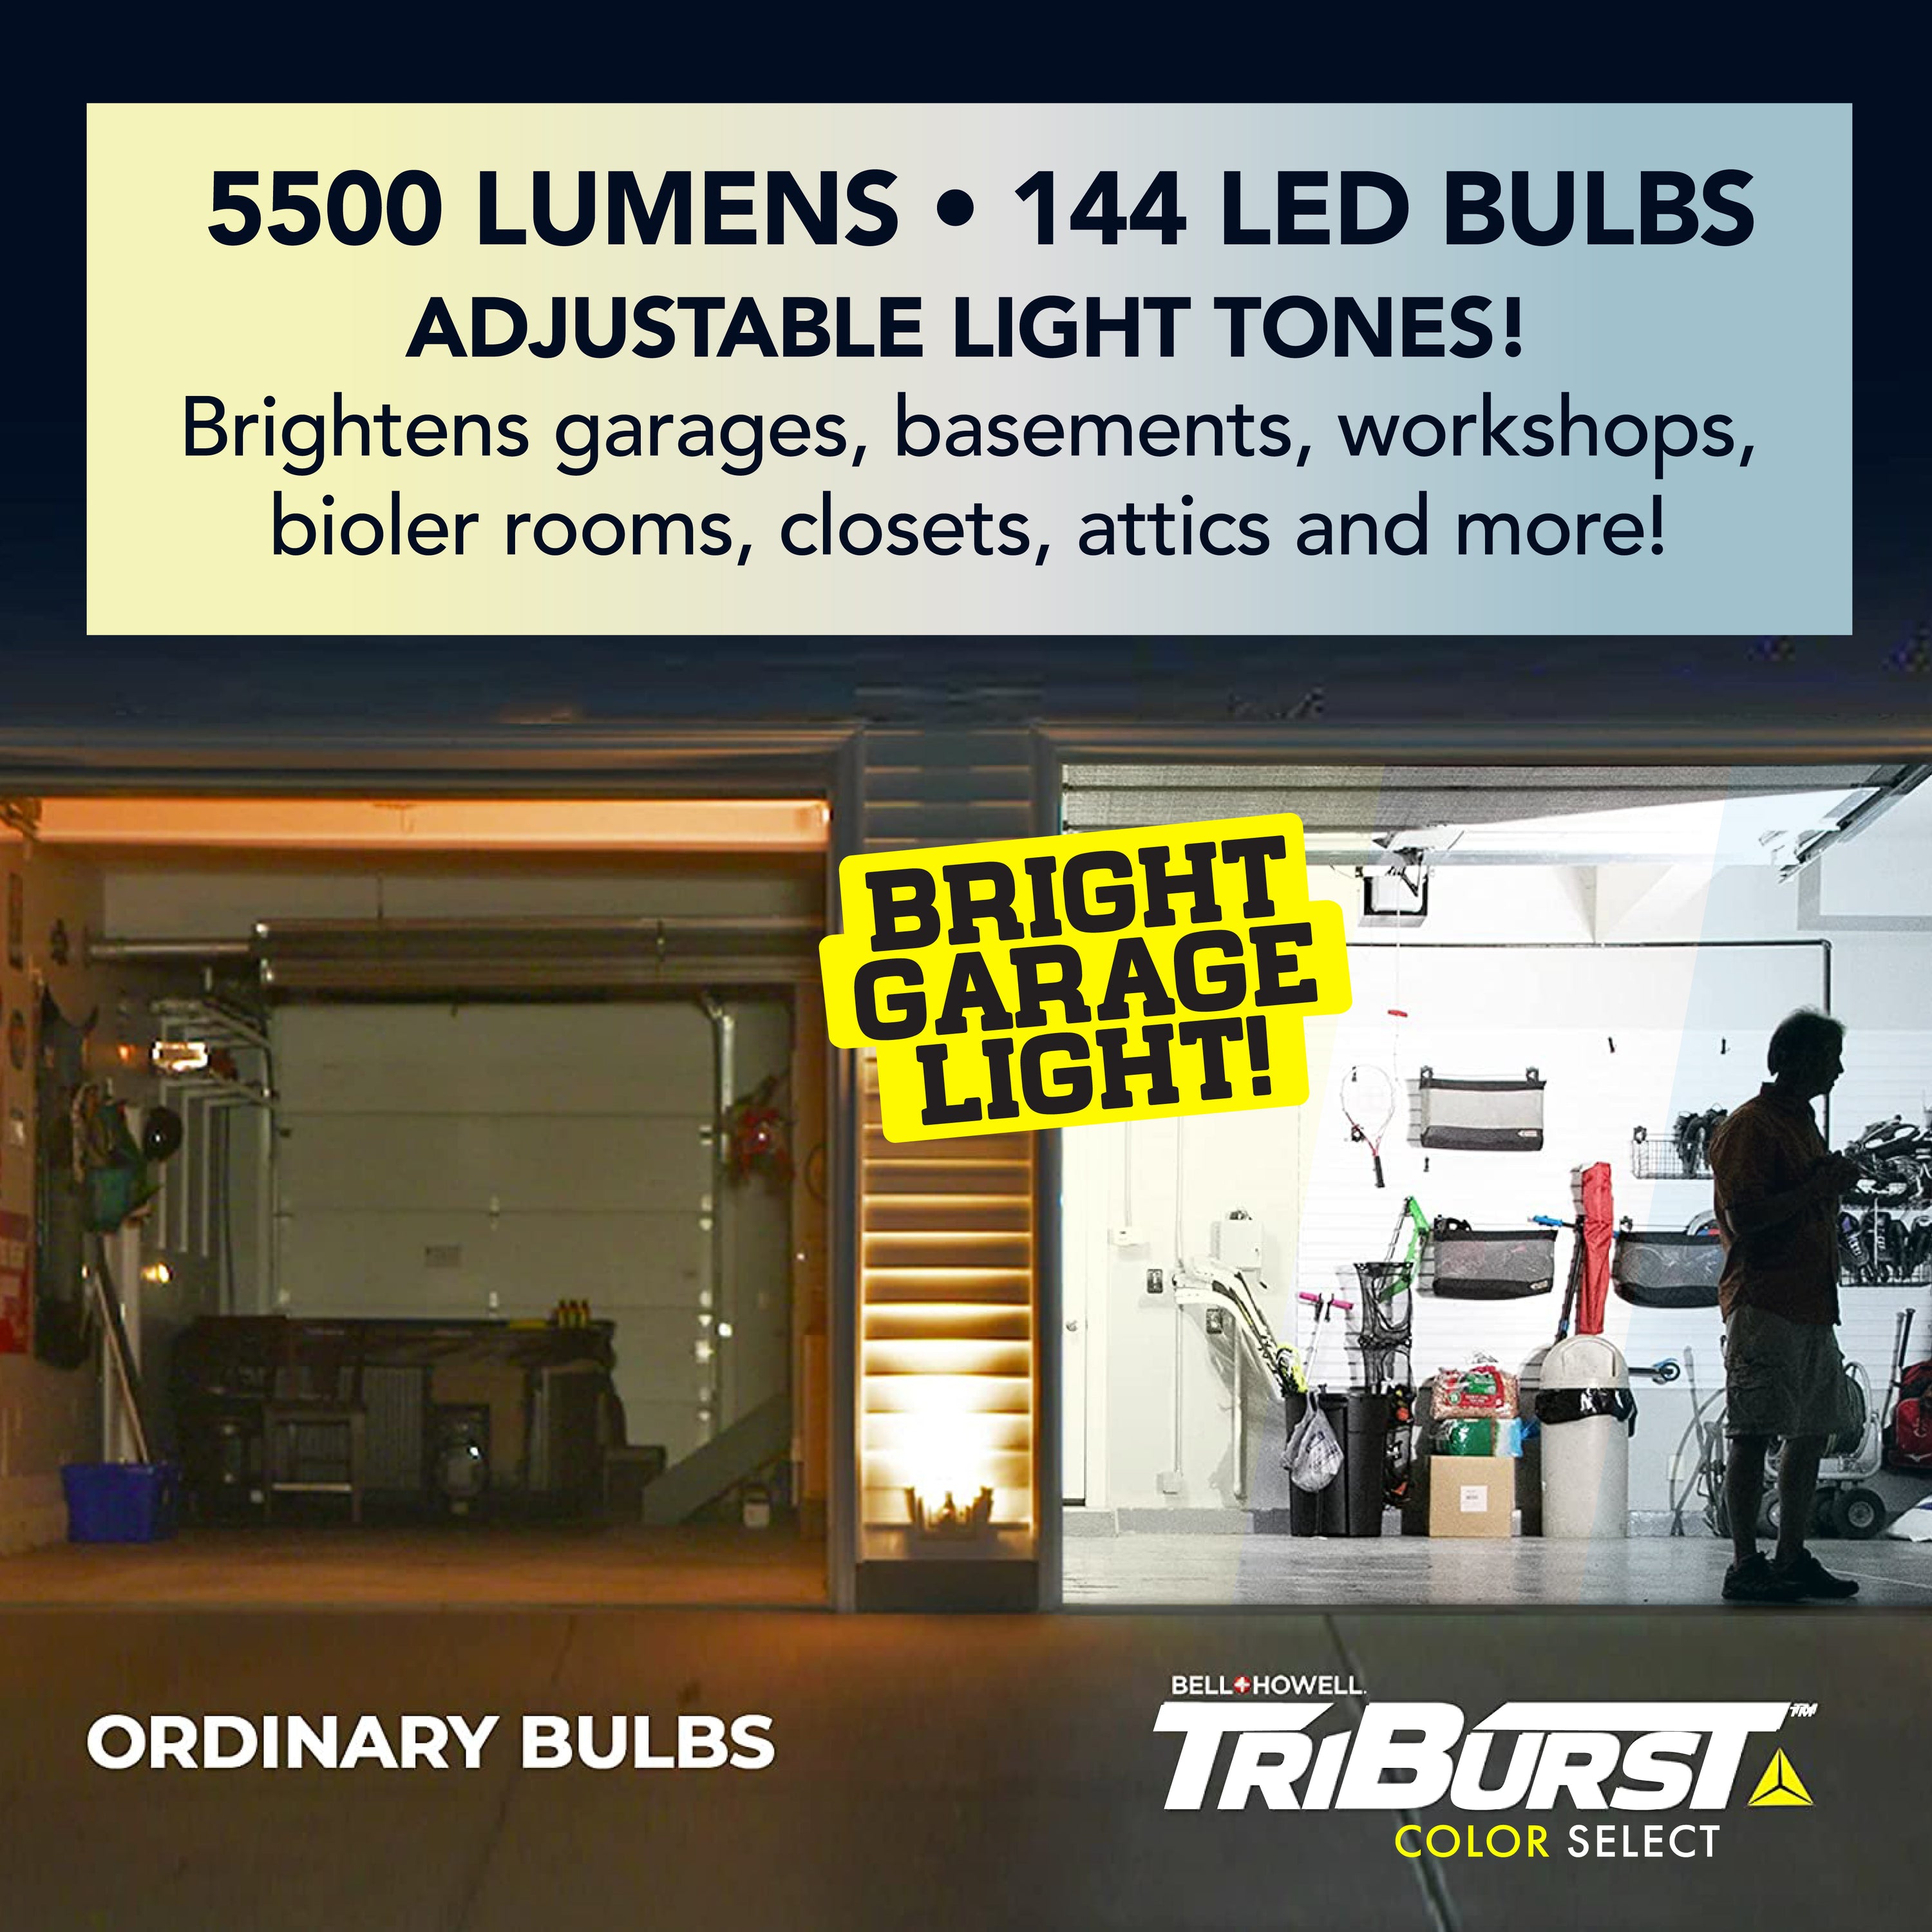 Bell+Howell Triburst 4000 Lumen LED Garage Lights Ceiling LED High